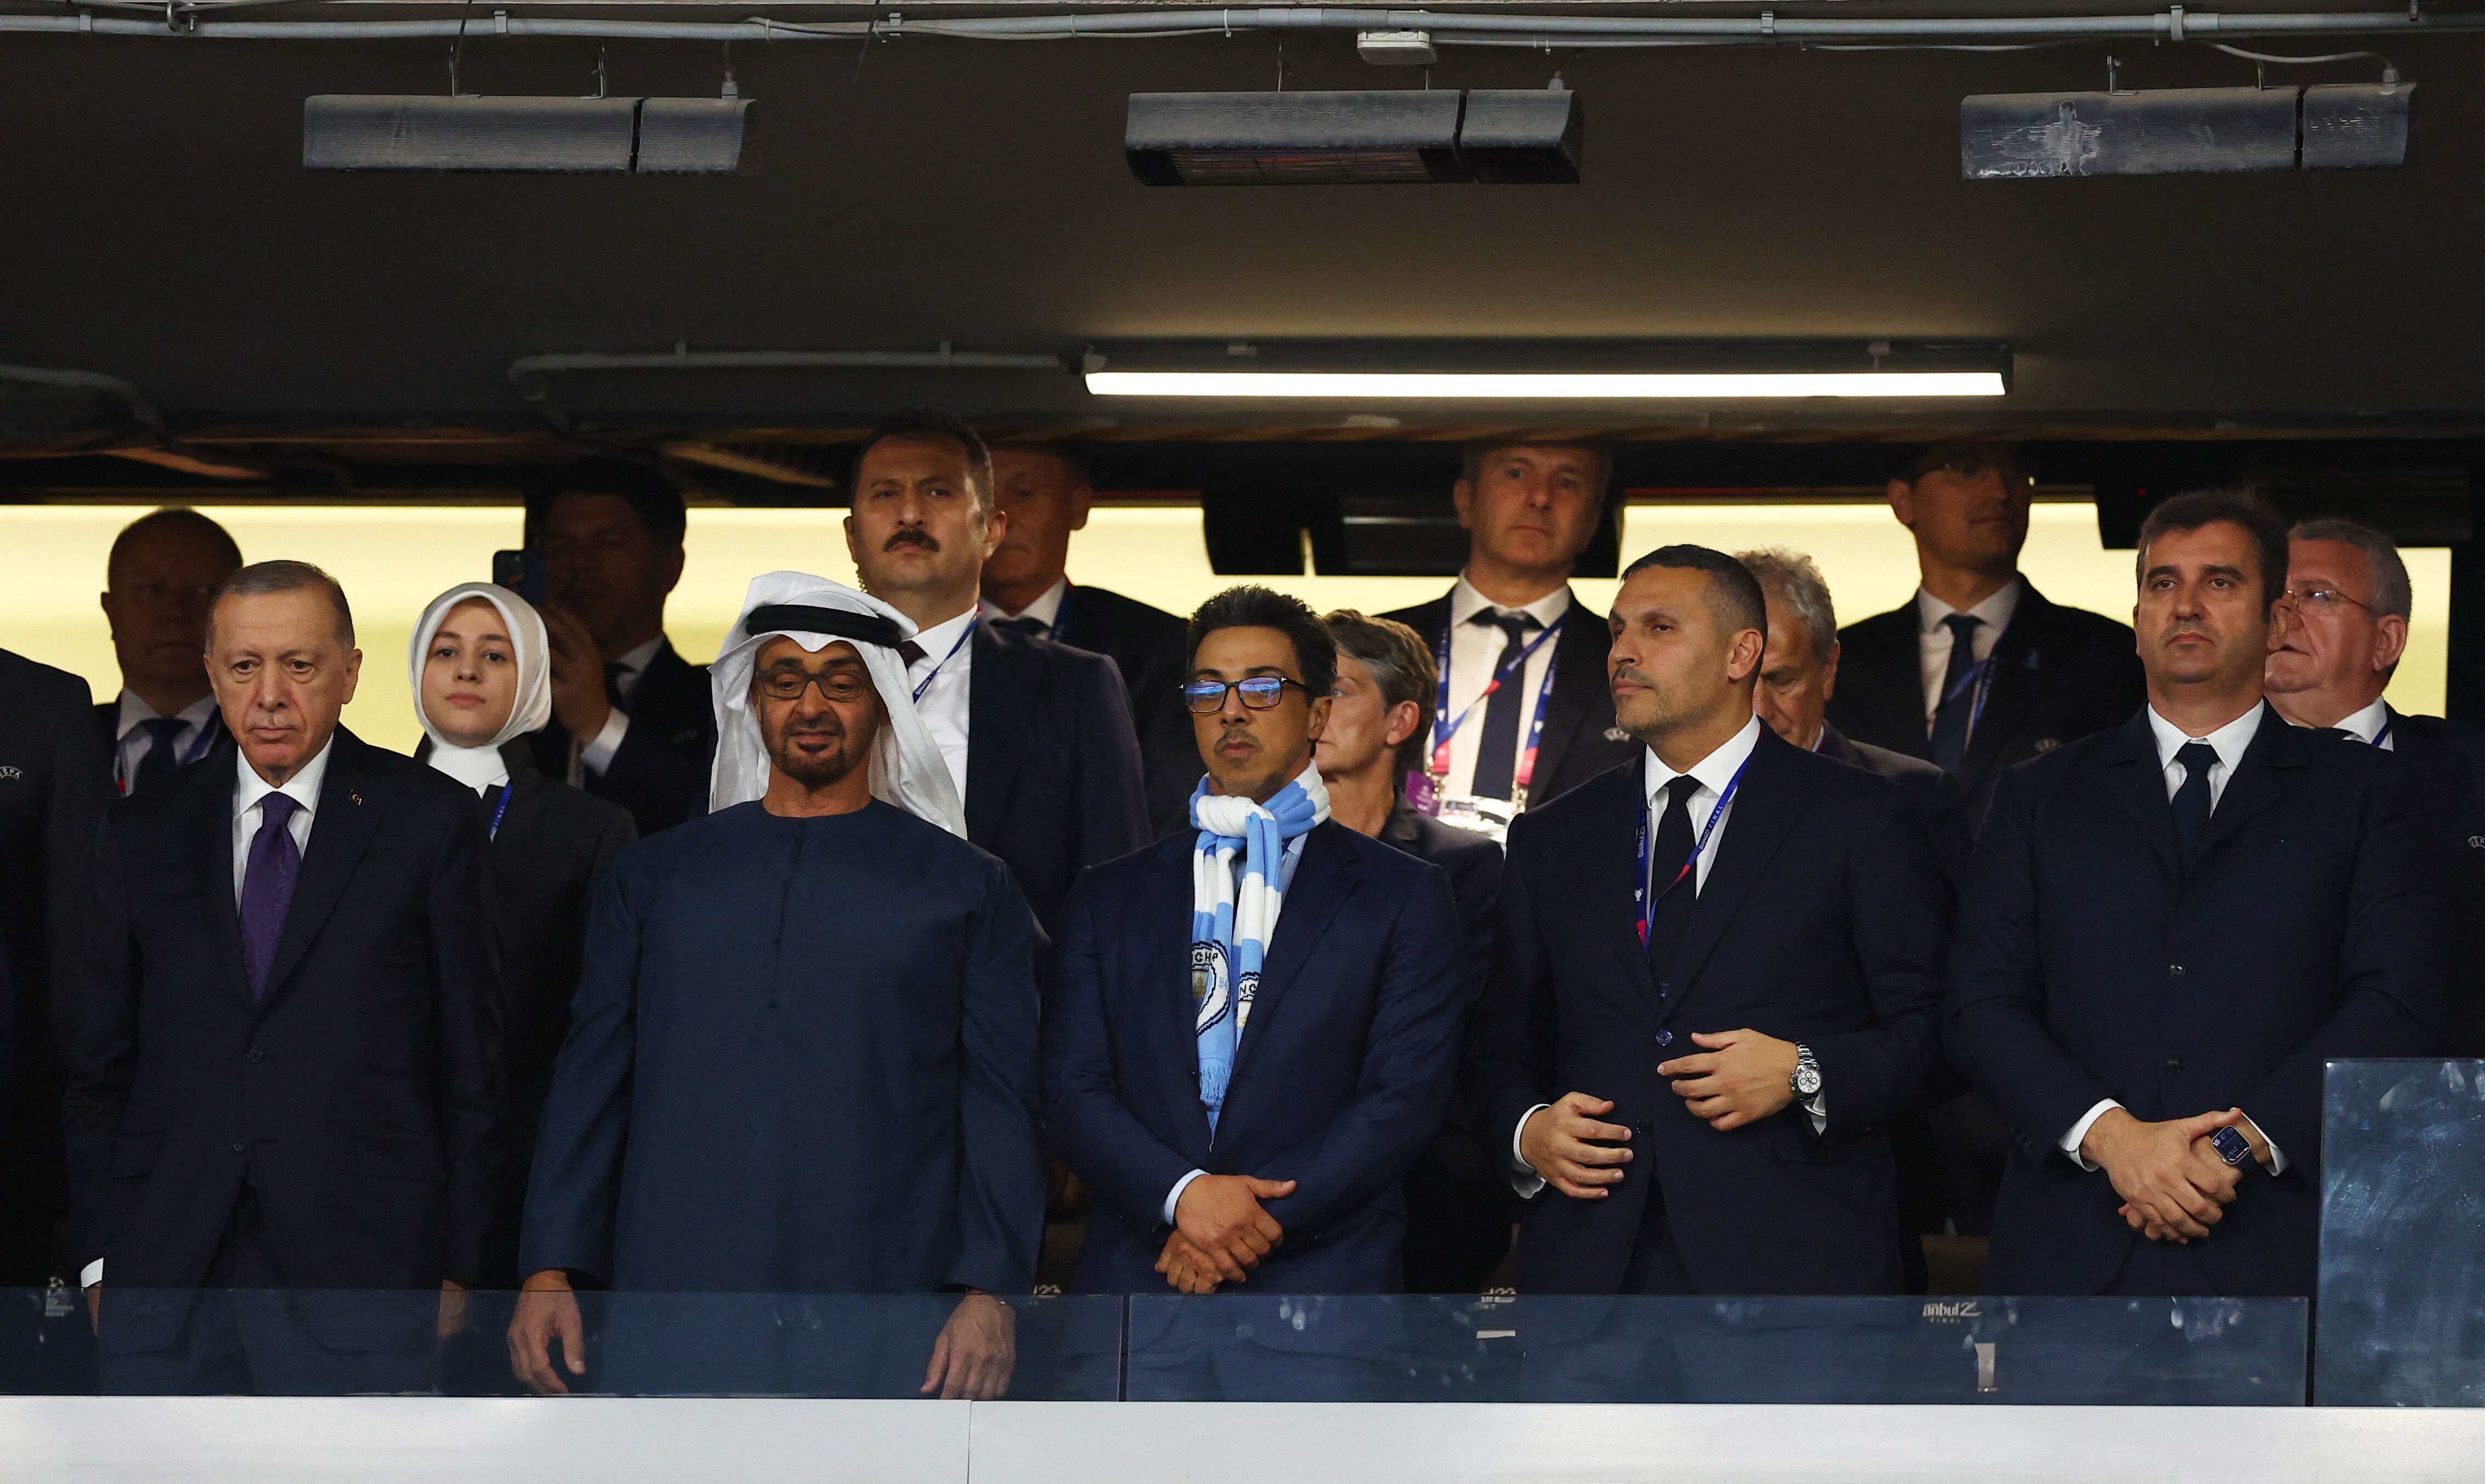 Sheikh Mansour en el palco del estadio (Foto: Reuters/Molly Darlington)